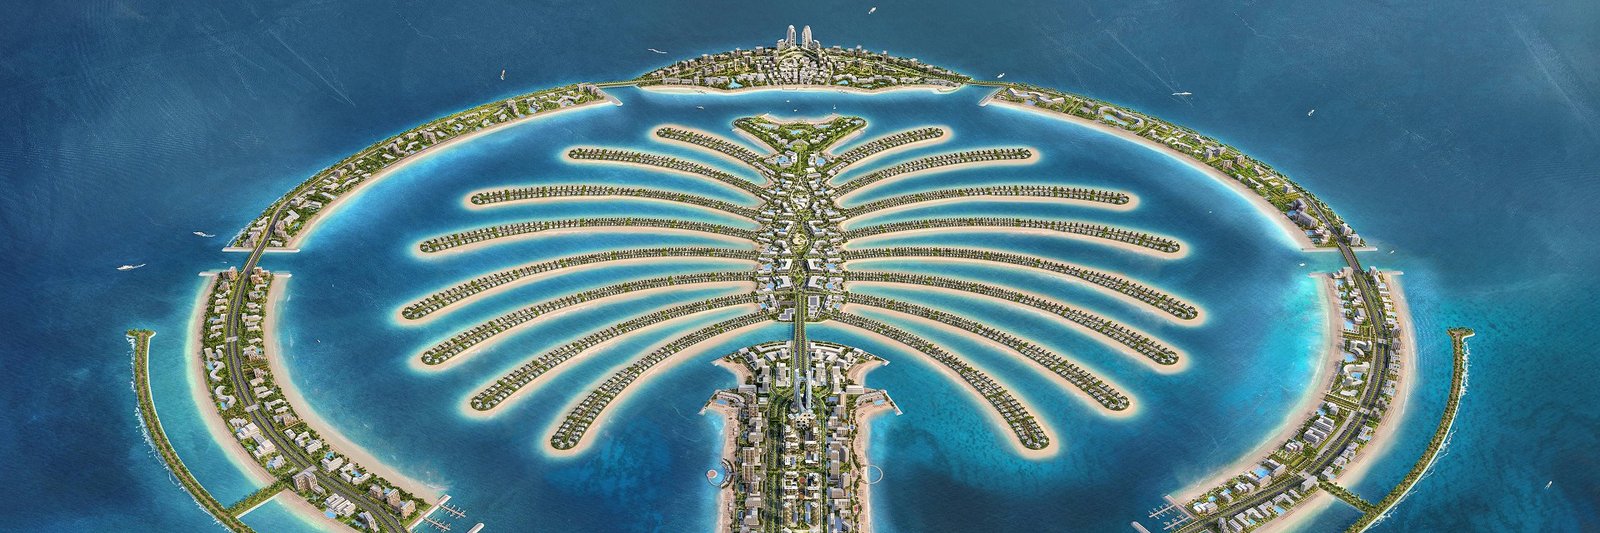 Palm Jebel Ali Master Plan